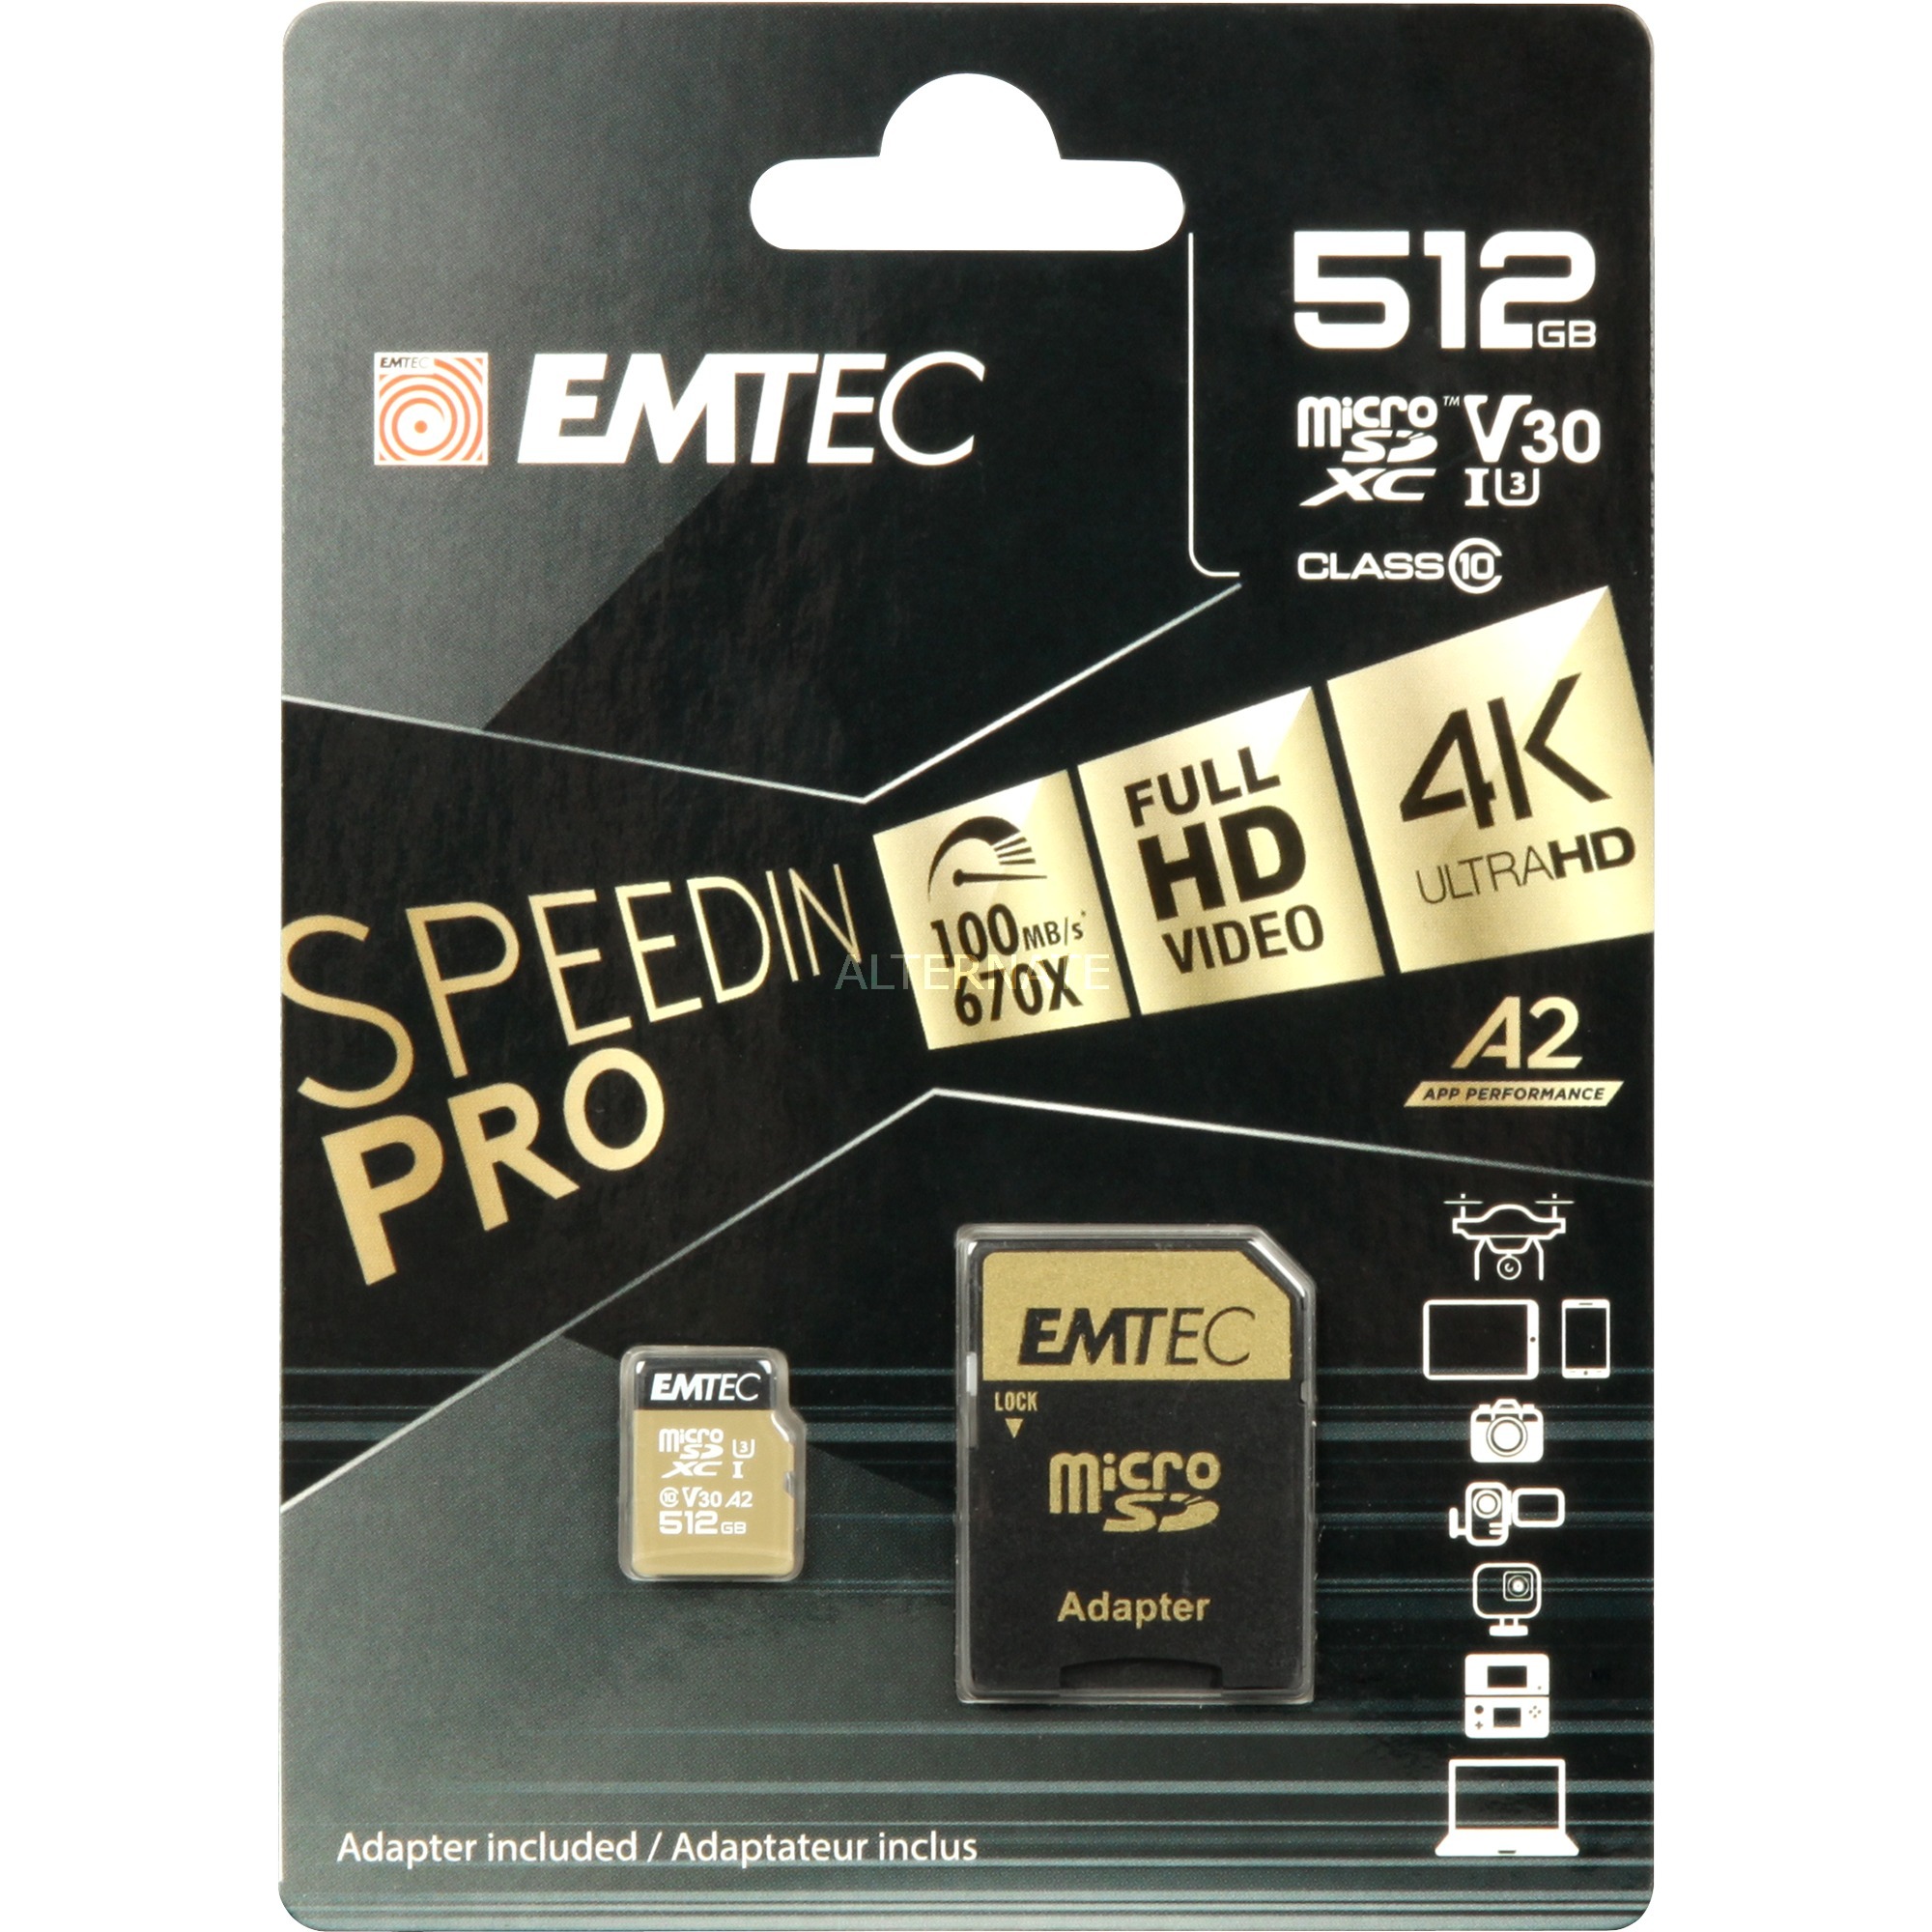 Image of Alternate - SpeedIN PRO 512 GB microSDXC, Speicherkarte online einkaufen bei Alternate